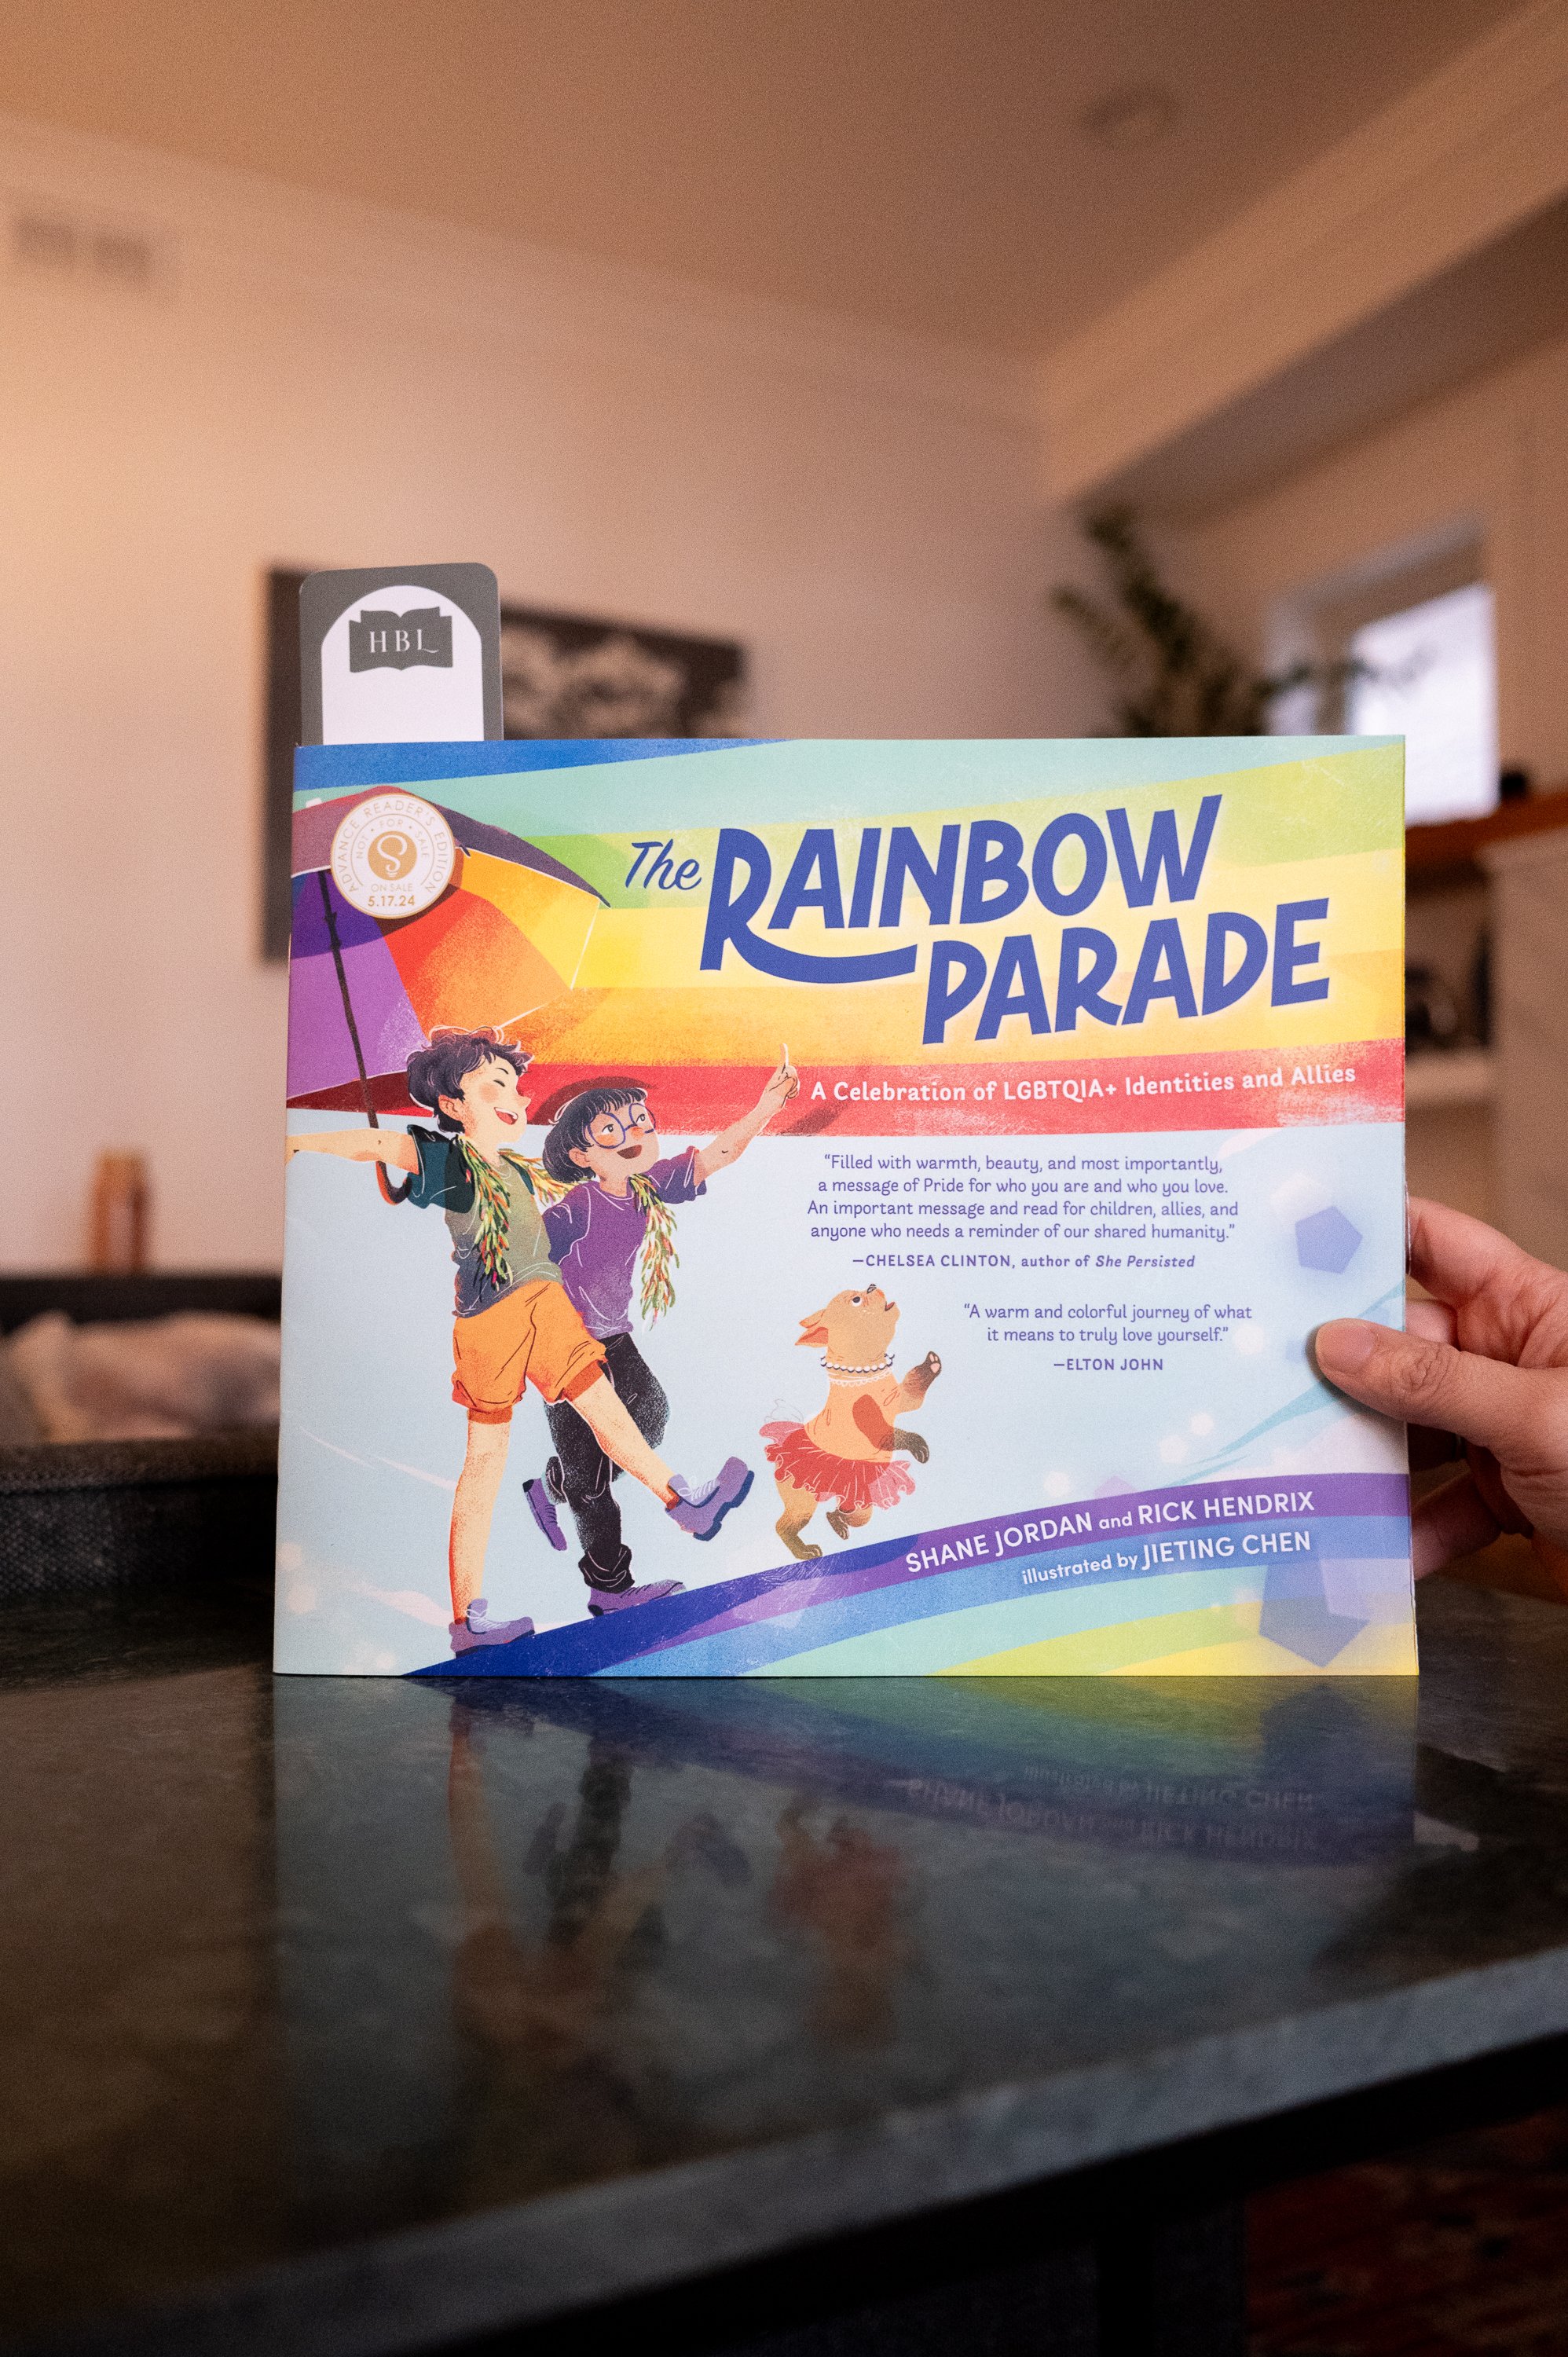 The Rainbow Parade by Shane Jordan and Rick Hendrix.jpg